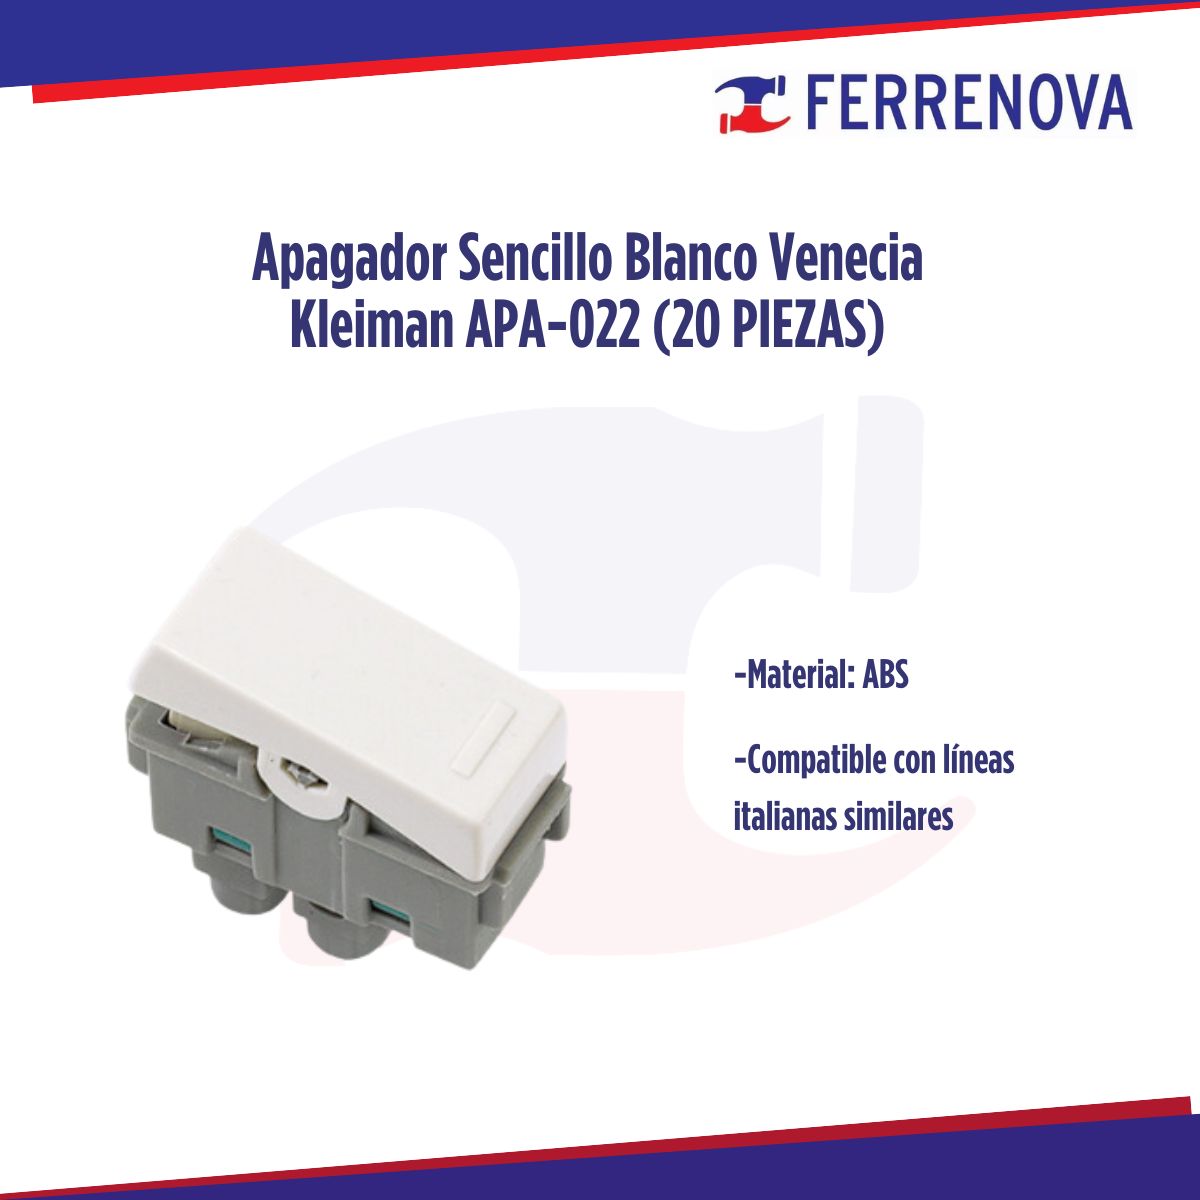 Apagador Sencillo Blanco Venecia Kleiman APA-022 (20 Piezas)